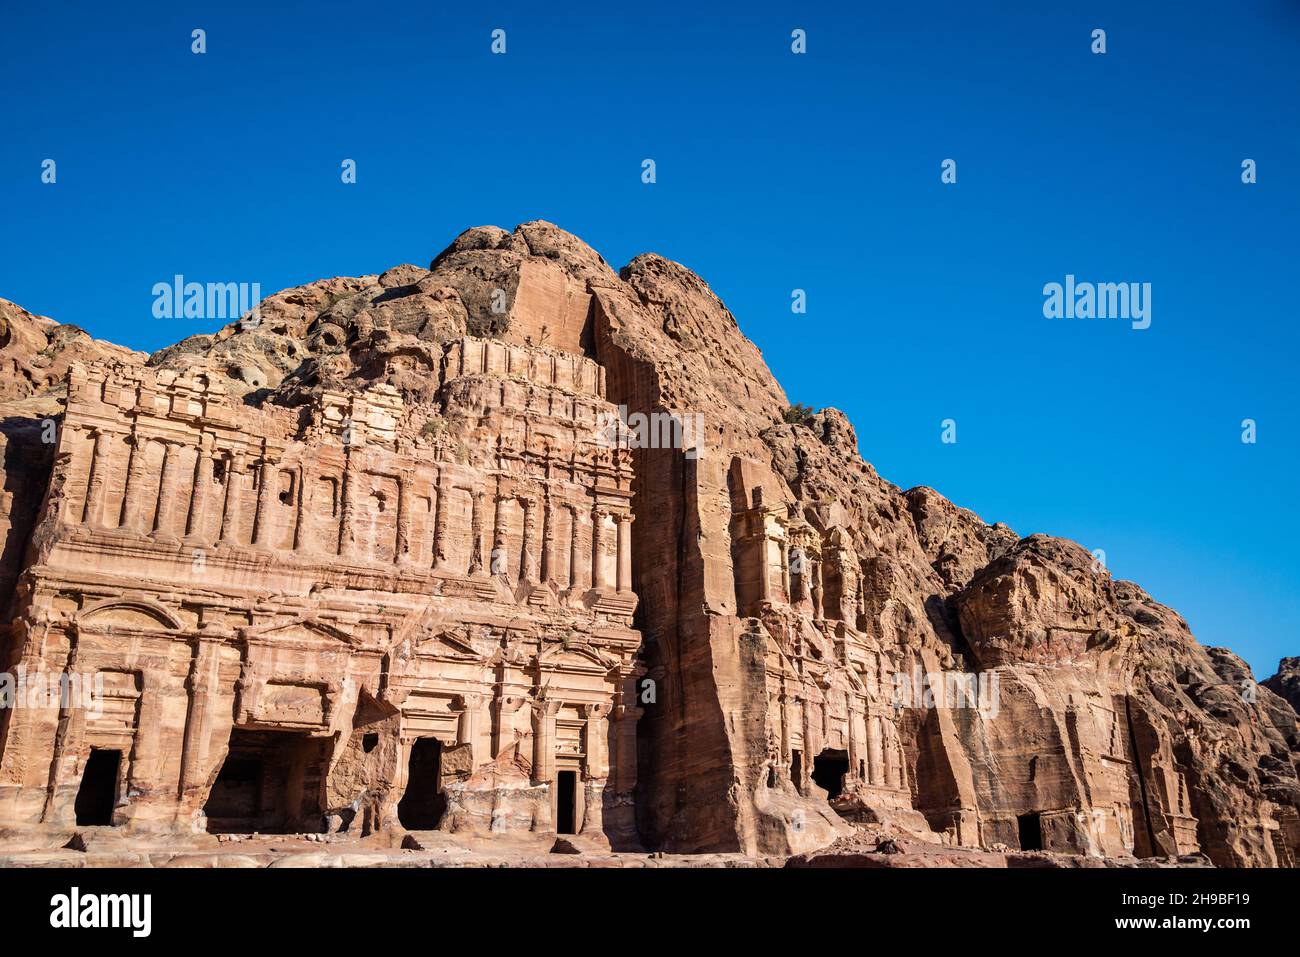 Blick auf die Königsgräber in Petra, Jordanien mit einem wunderschönen tiefblauen Himmel Stockfoto